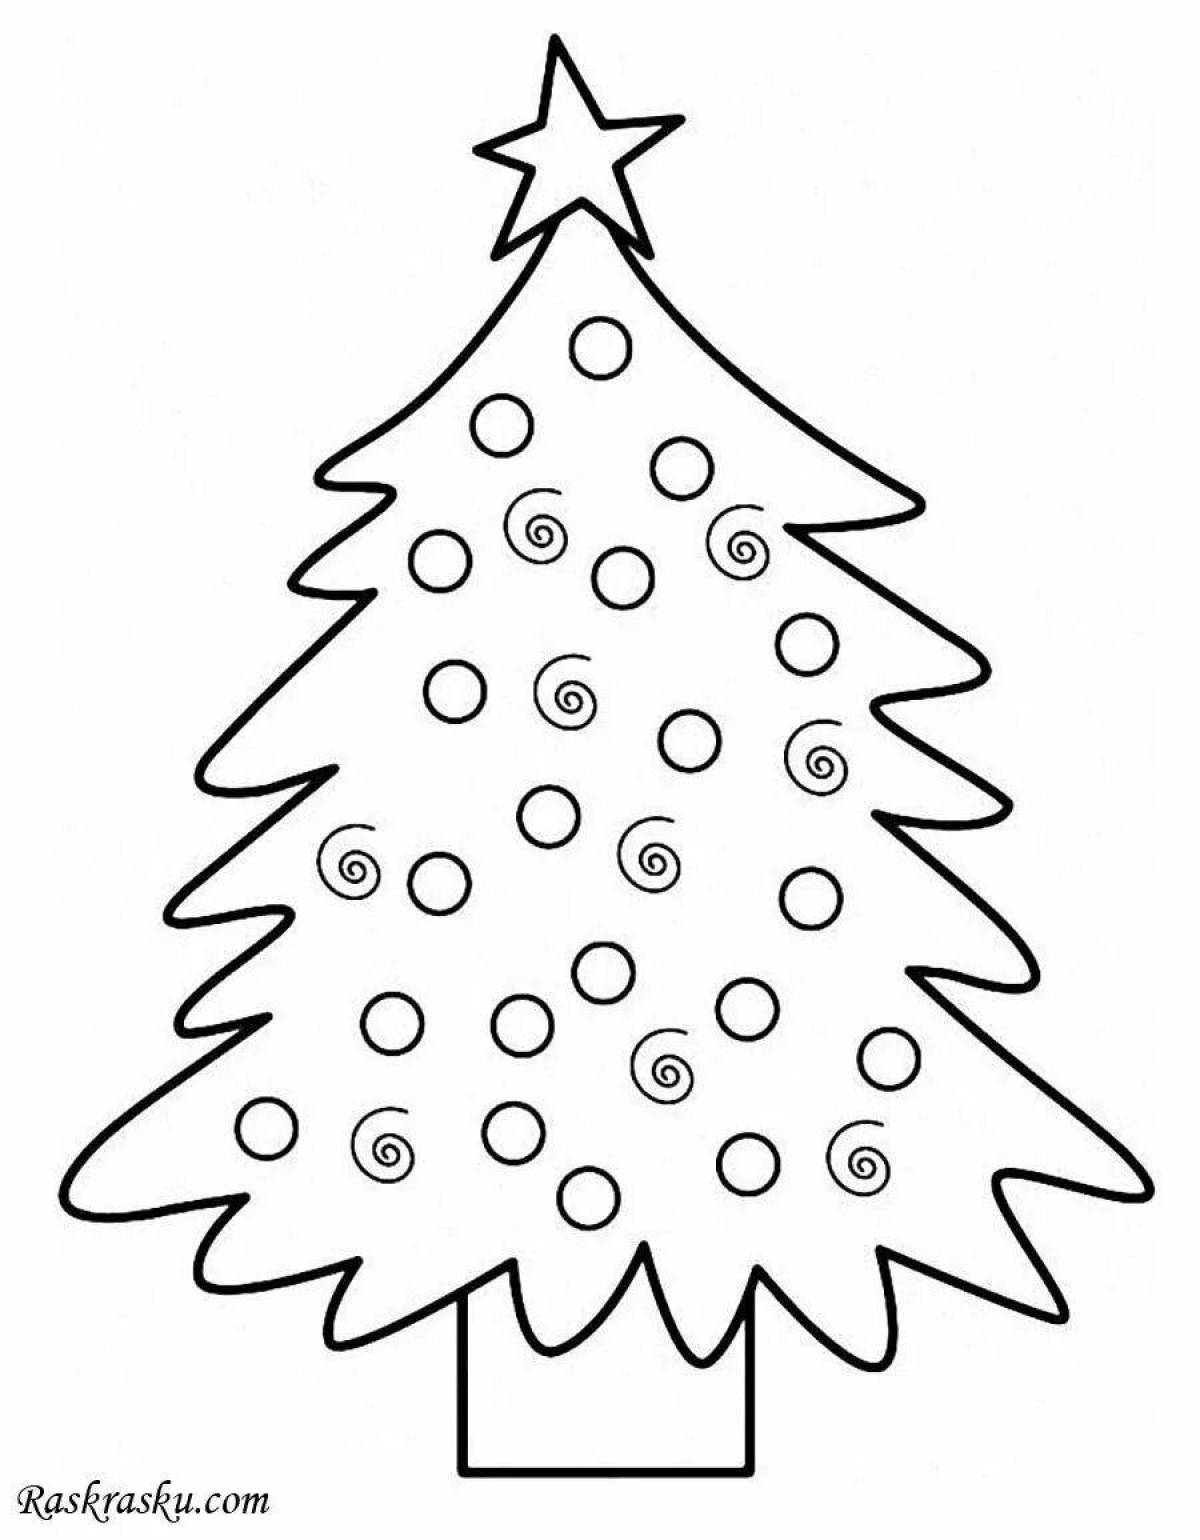 Прекрасный шаблон раскраски рождественской елки